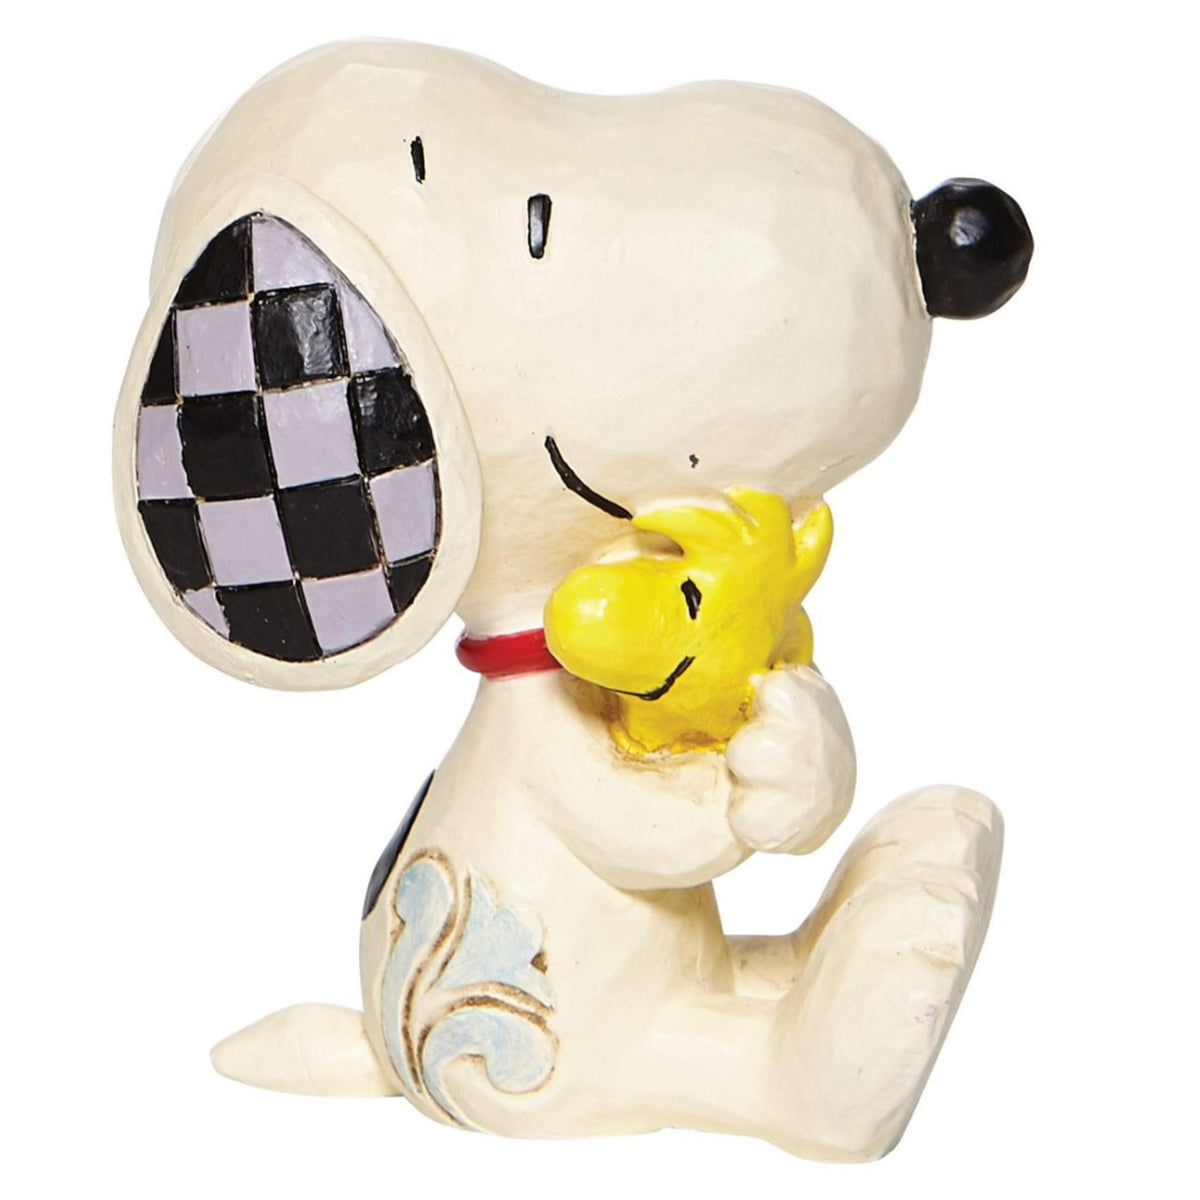 Peanuts - Snoopy and Woodstock Figurine